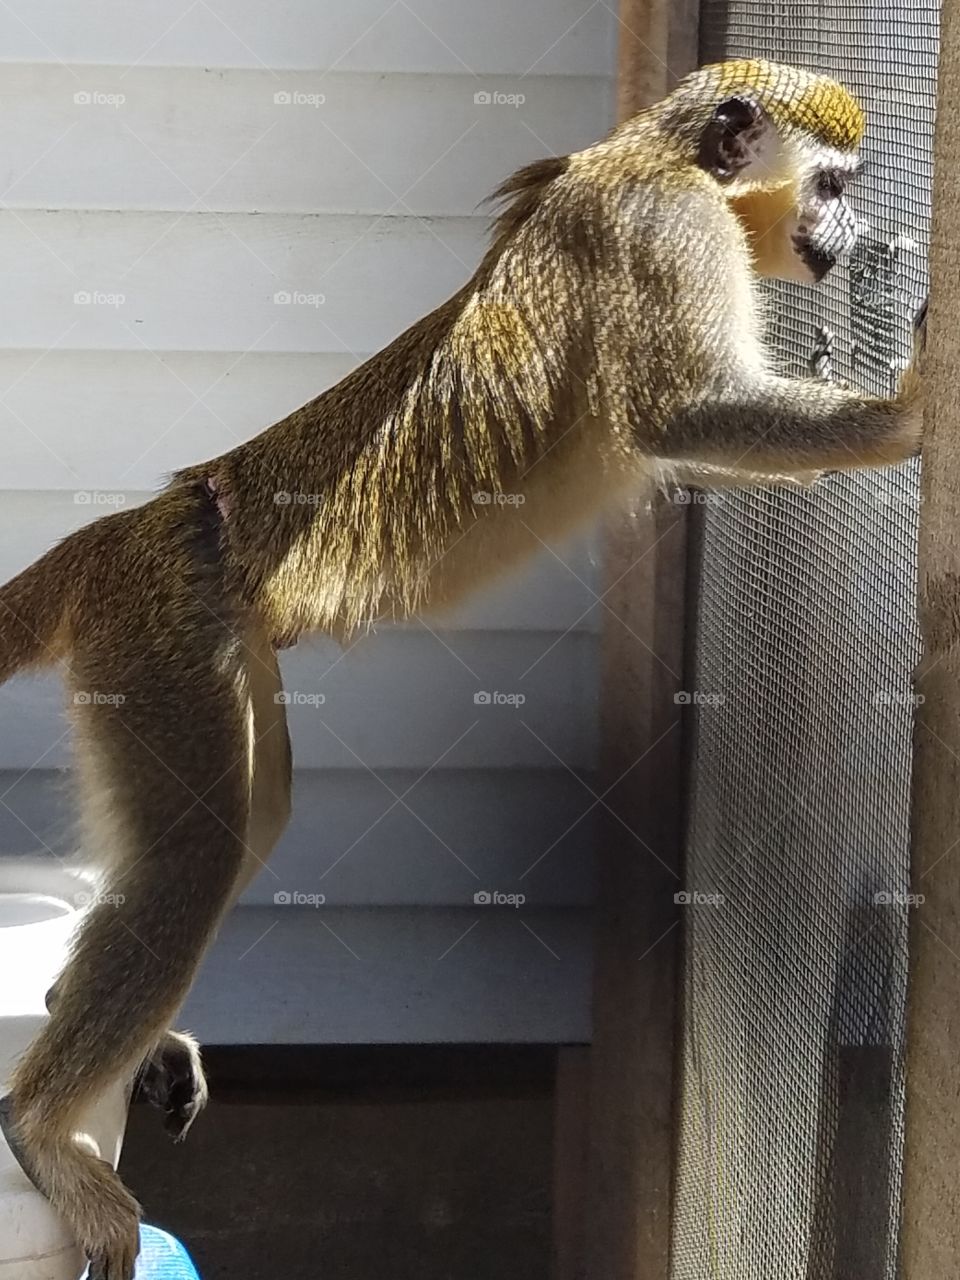 Monkey Staring